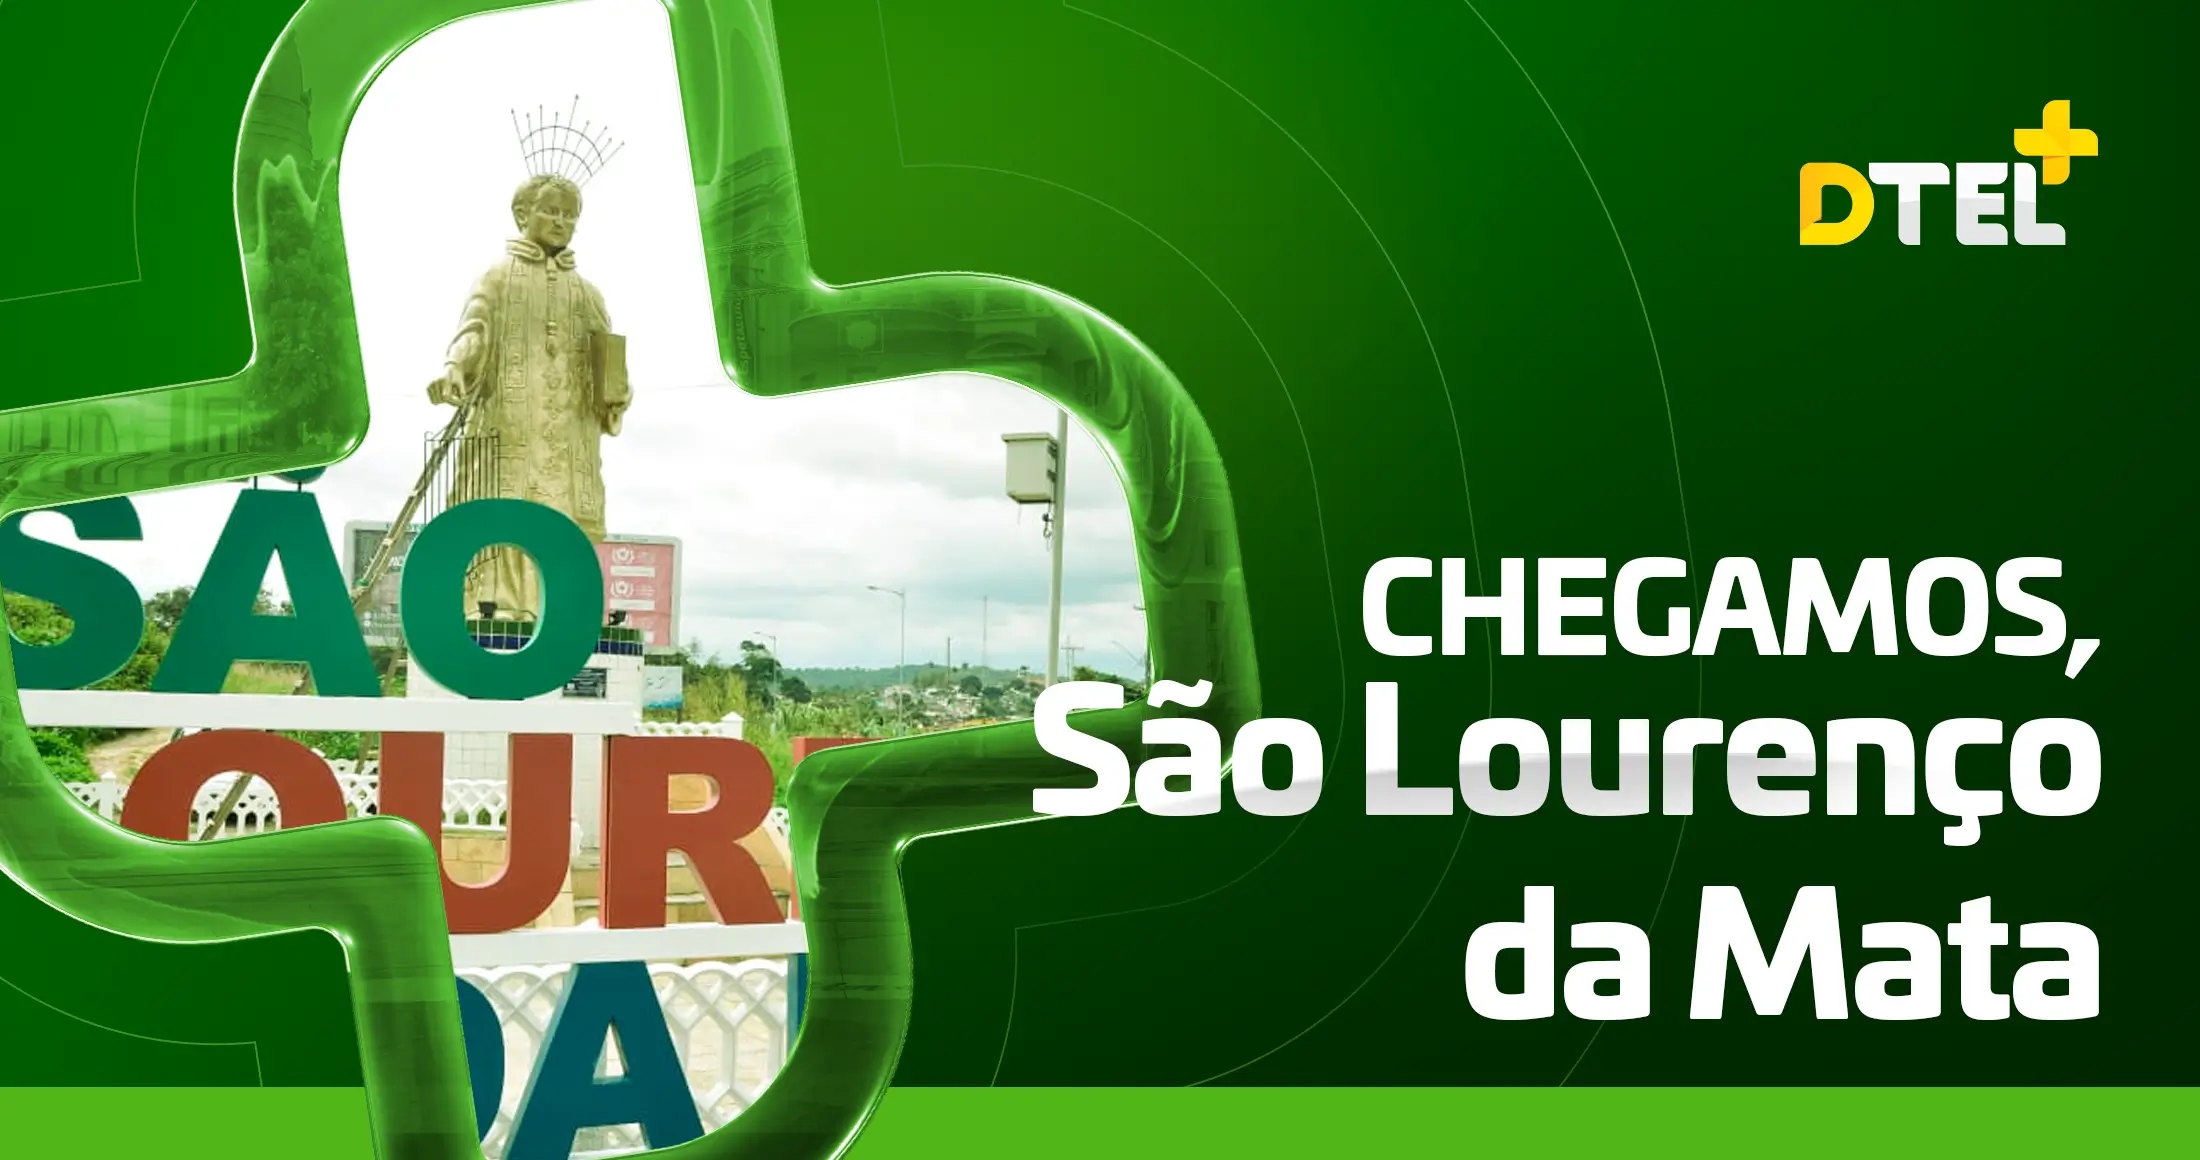 A Dtel chega em São Lourenço da Mata com a melhor conexão do estado de Pernambuco 